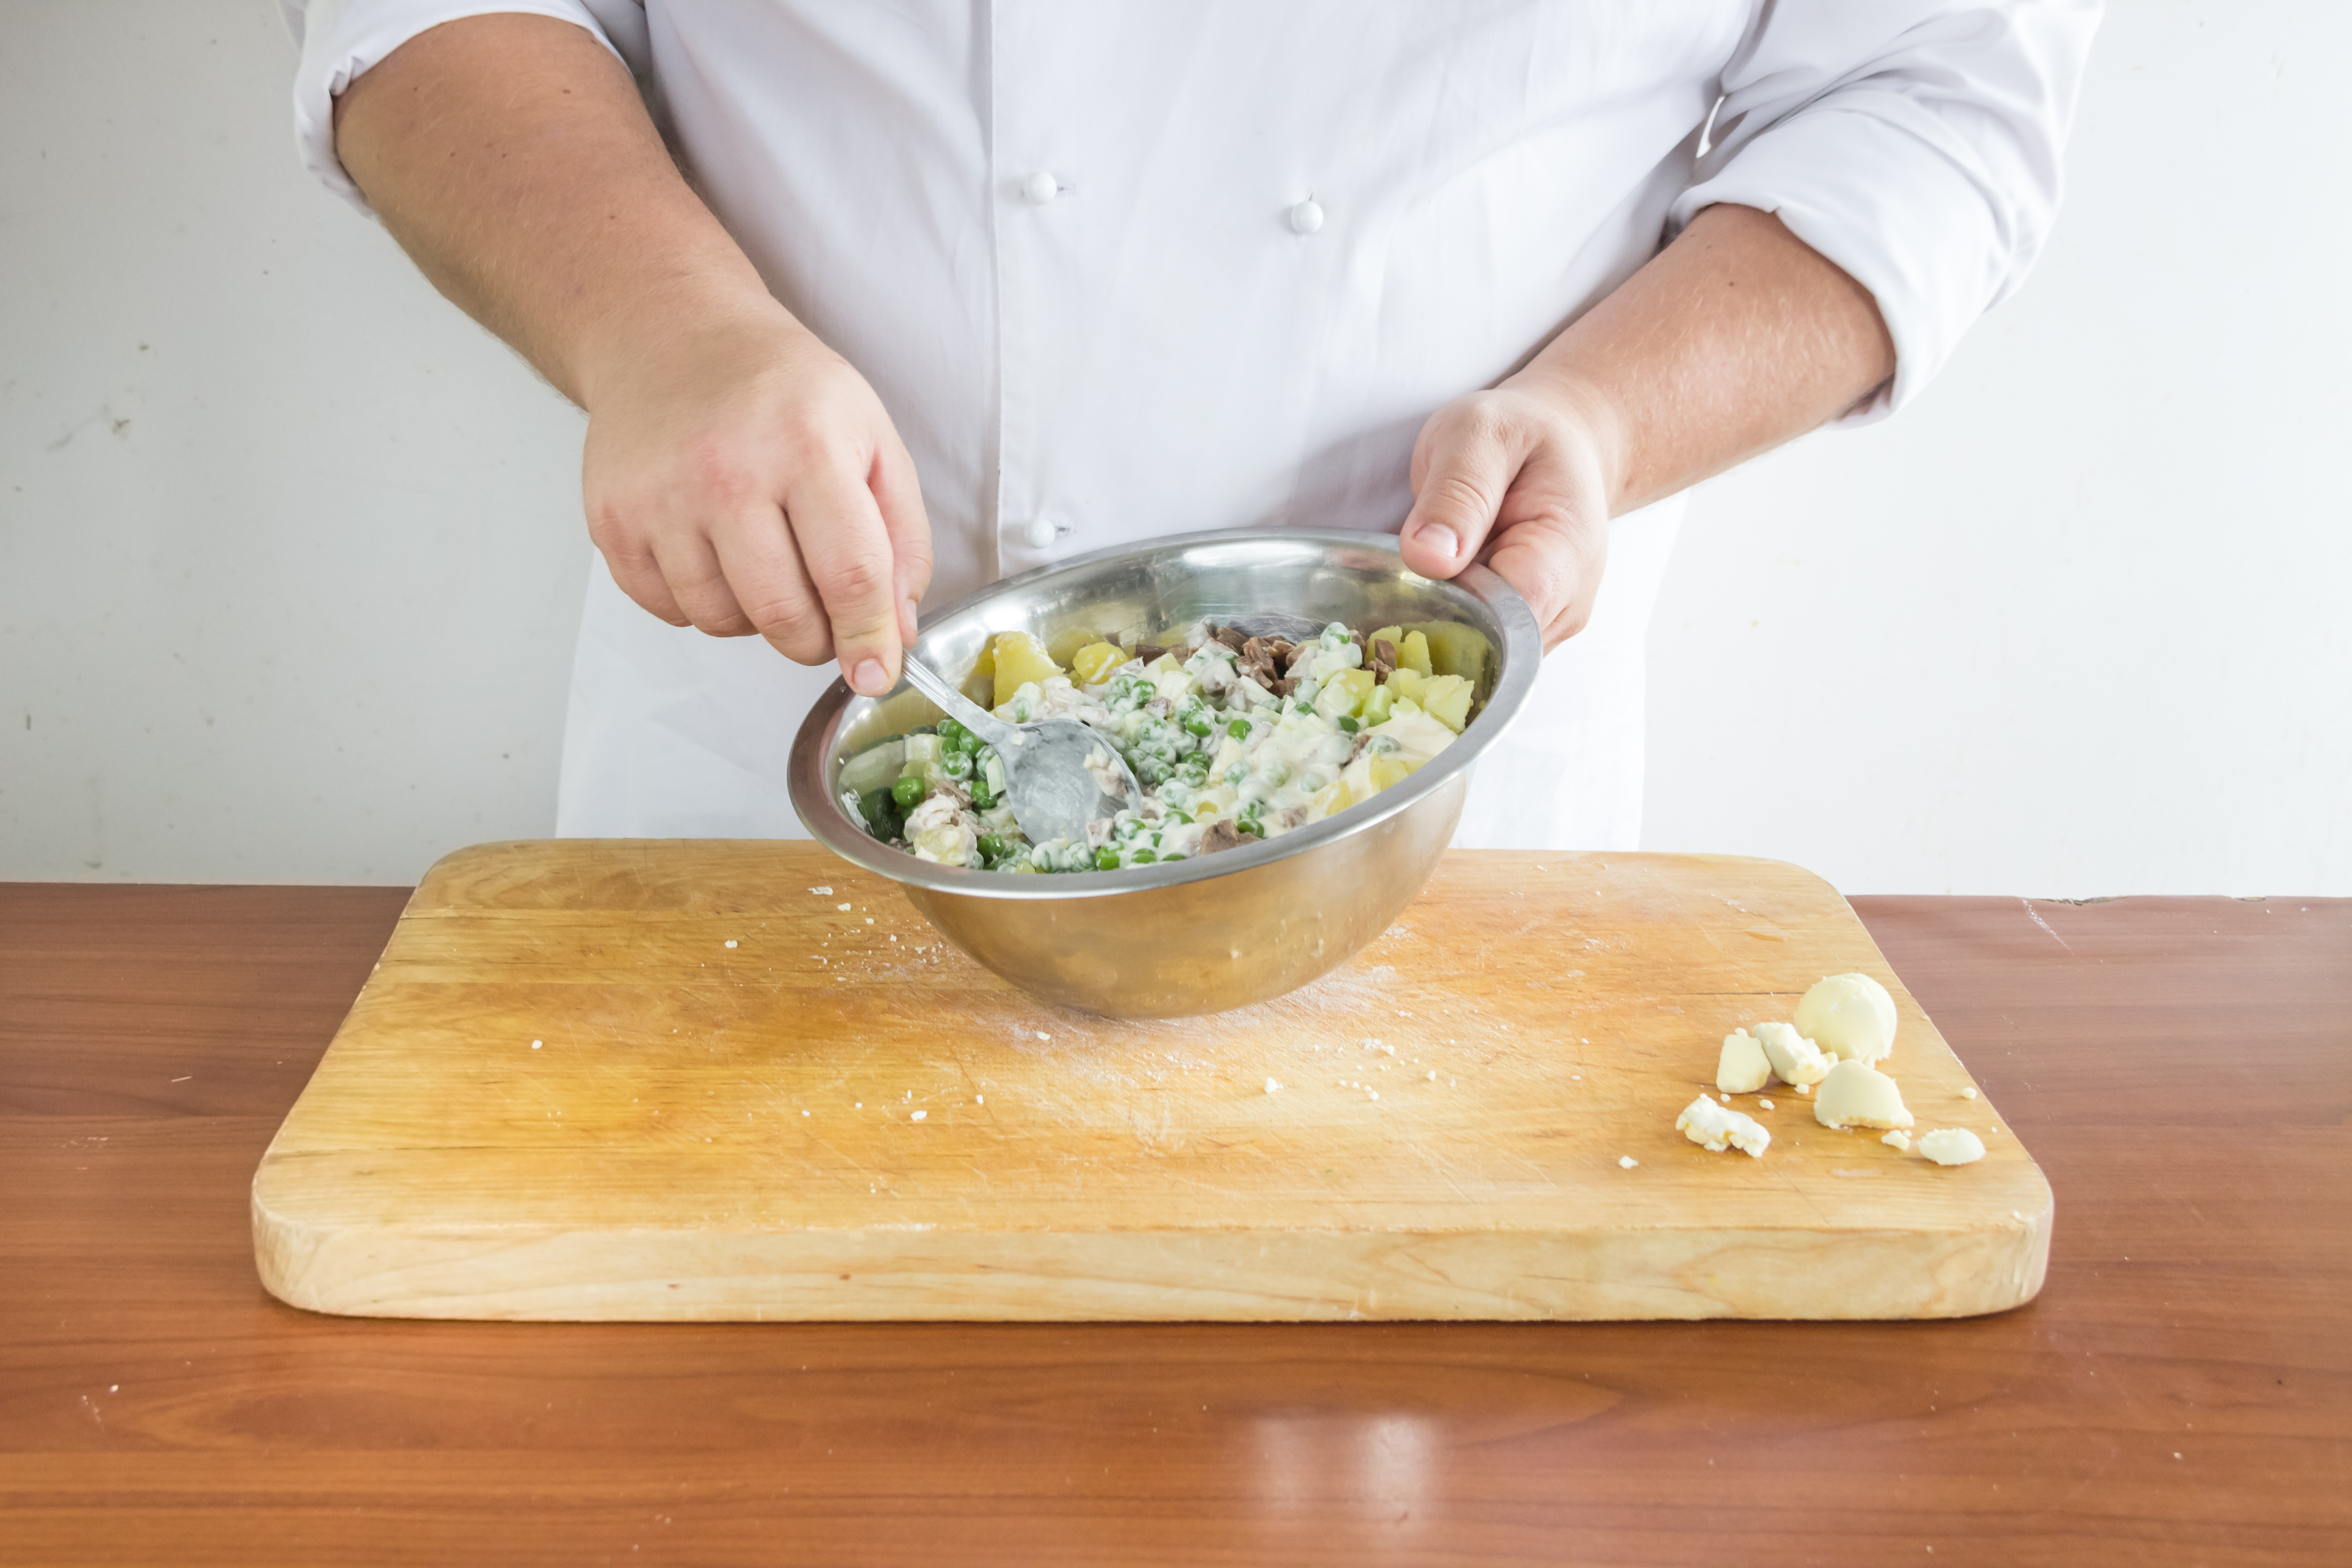 Перемешайте все подготовленные ингредиенты оливье с языком, заправьте майонезом по вкусу и выложите в большой красивый салатник. Верх присыпьте раскрошенным желтком.